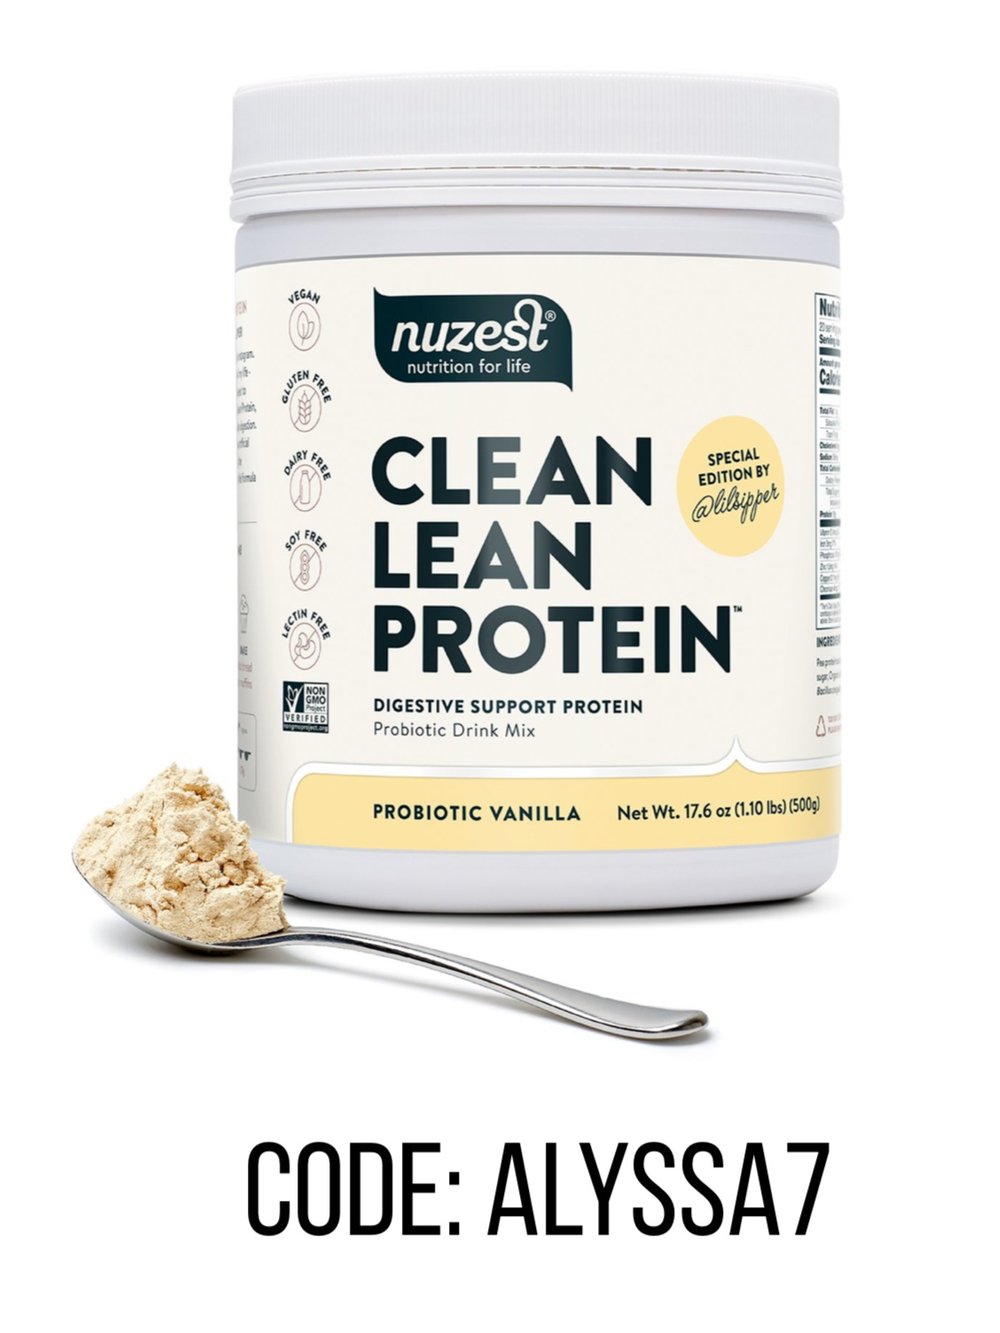 Nuzest Digestive Support Protein